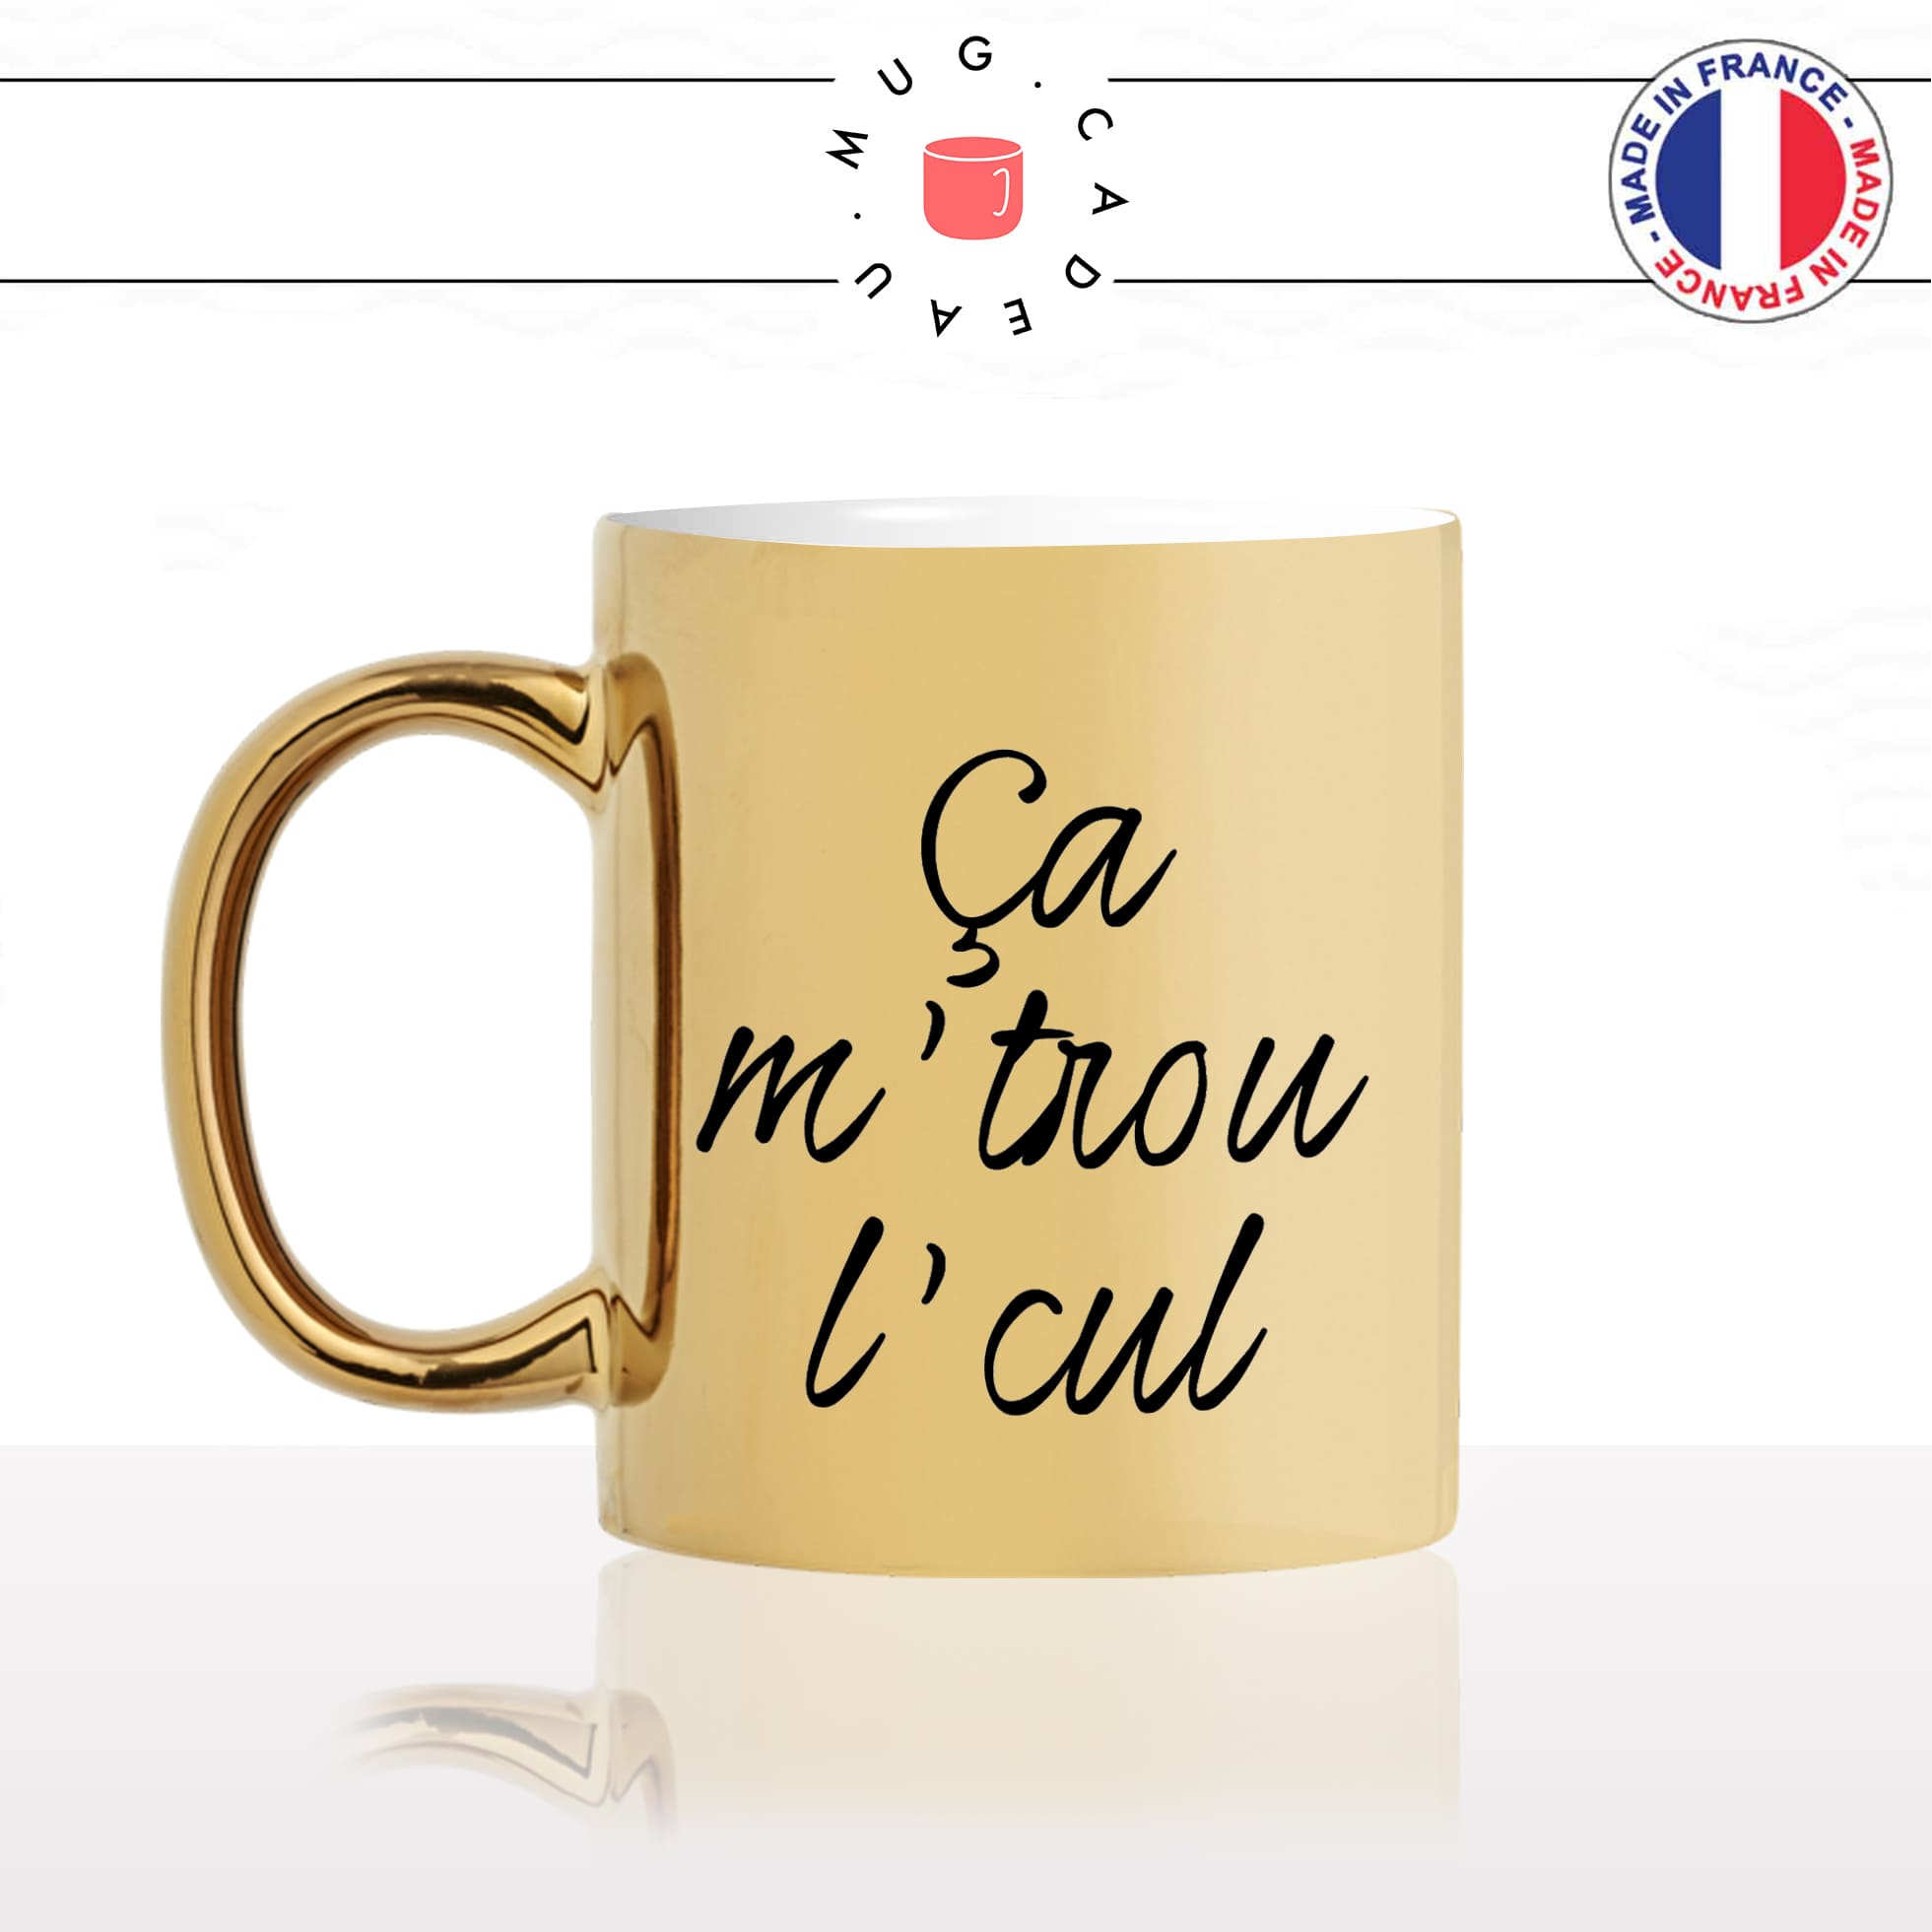 mug-tasse-or-doré-gold-unique-ca-me-trou-le-cul-expression-francaise-homme-femme-humour-fun-cool-idée-cadeau-original-personnalisé